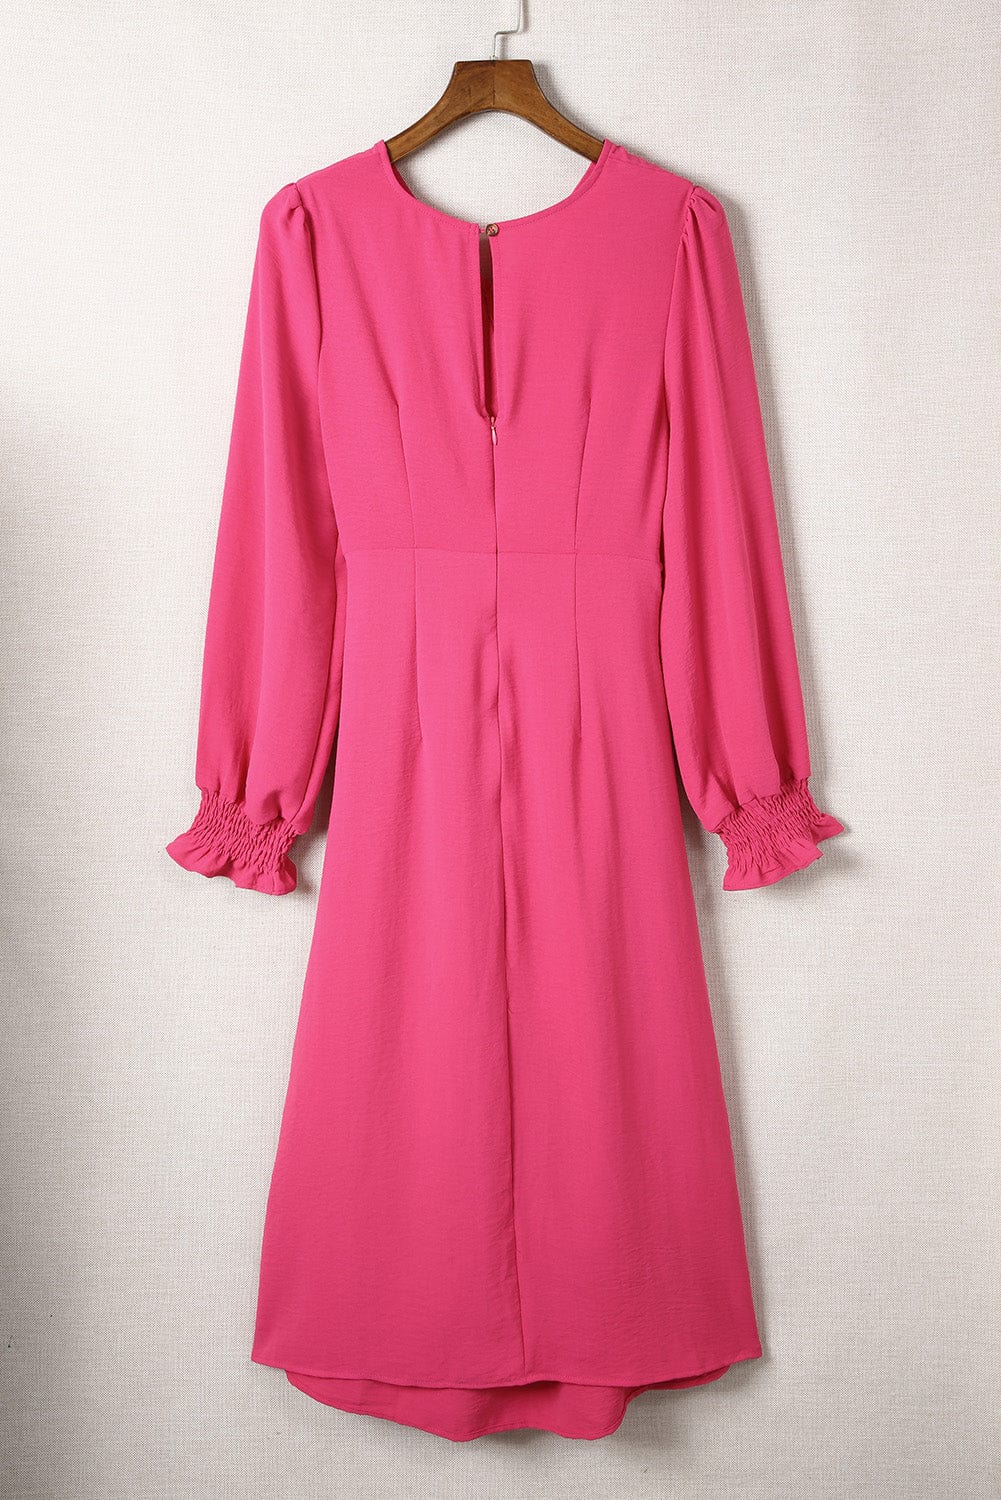 Shoppe EZR Dresses Rose Twist Front Keyhole Back V Neck Midi Dress